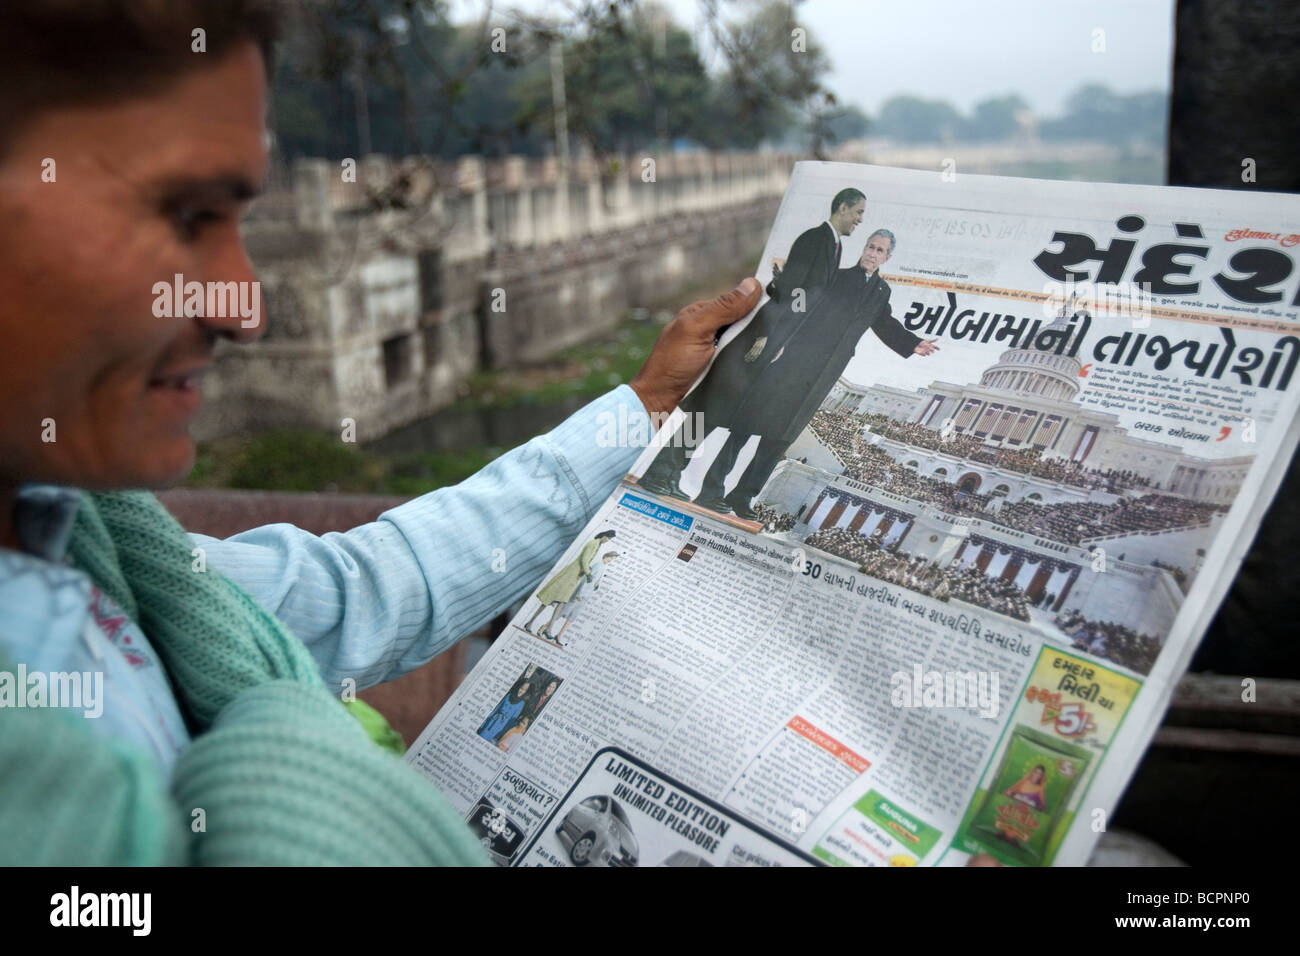 Man reading Gujarati histoire de journal de Barack Obama inauguration présidentielle américaine Bhavnagar Inde Banque D'Images